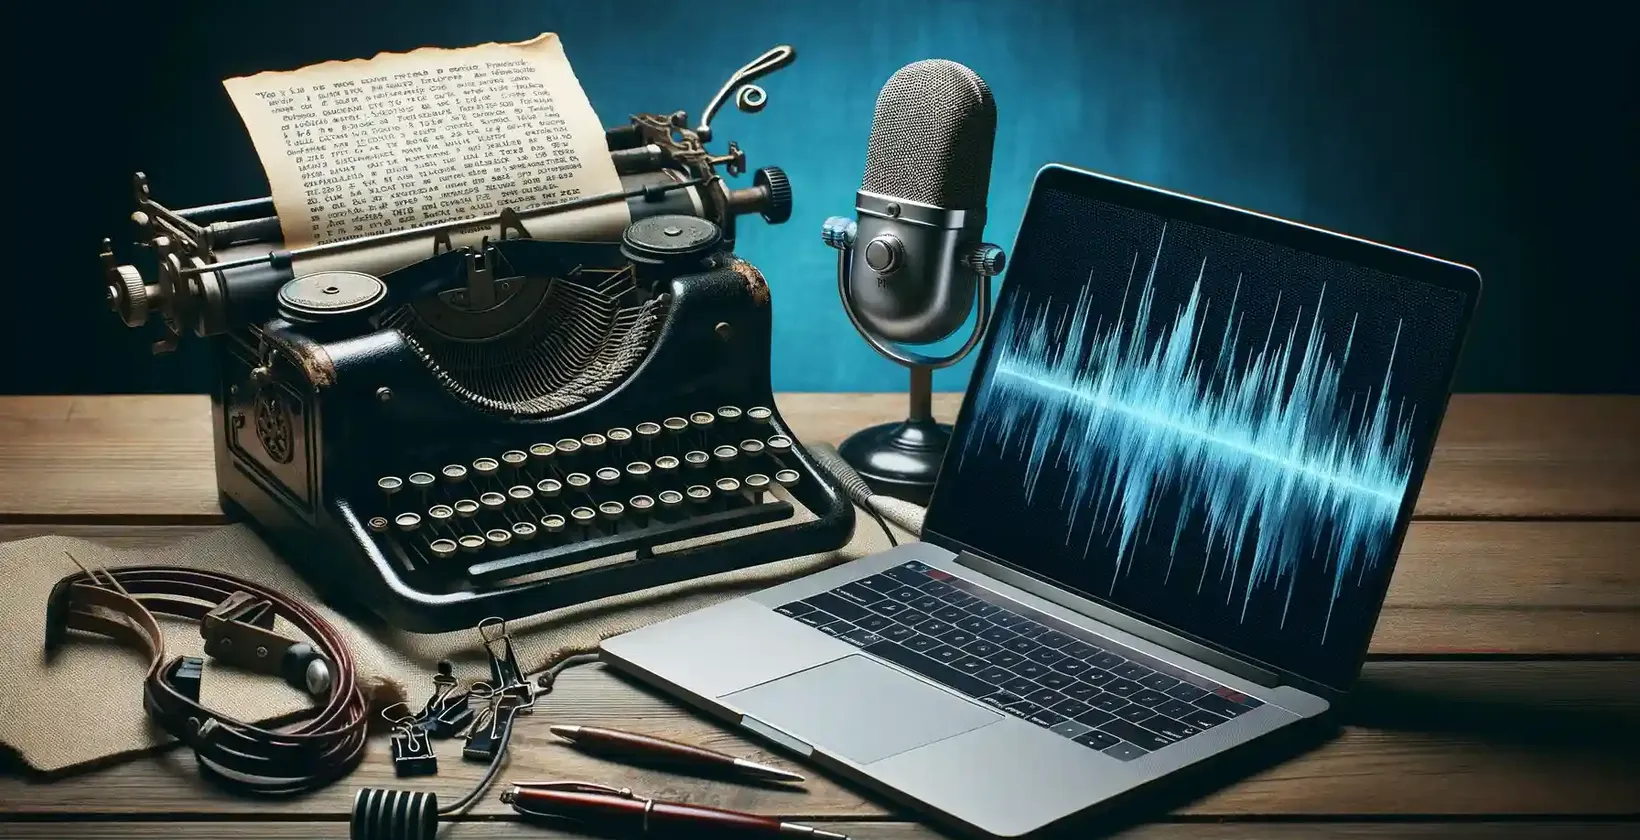 Oprogramowanie do transkrypcji dla pisarzy reprezentowane przez zabytkową maszynę do pisania, wpisany tekst, mikrofon i laptop.